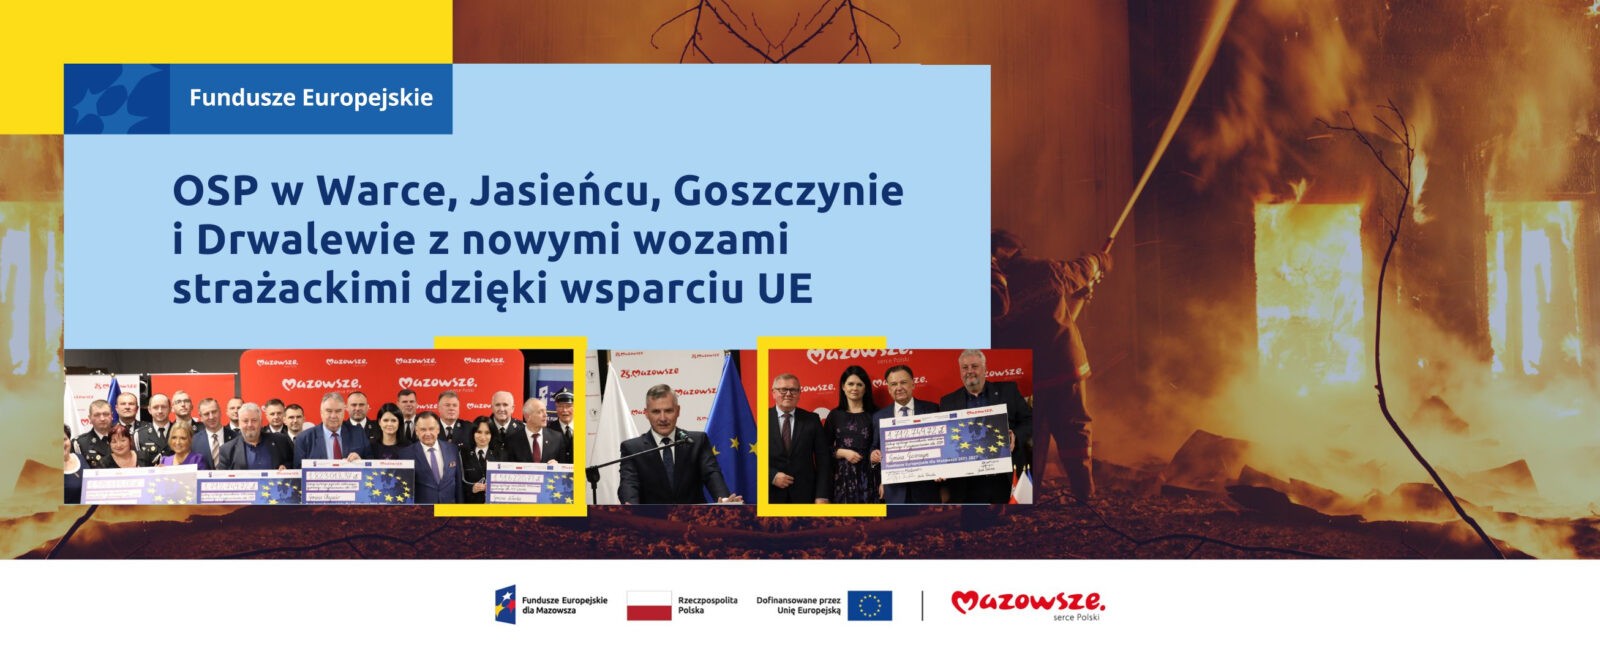 Na grafice widnieje napis: OSP w Warce, Jasieńcu, Goszczynie i Drwalewie z nowymi wozami strażackimi dzięki wsparciu UE.